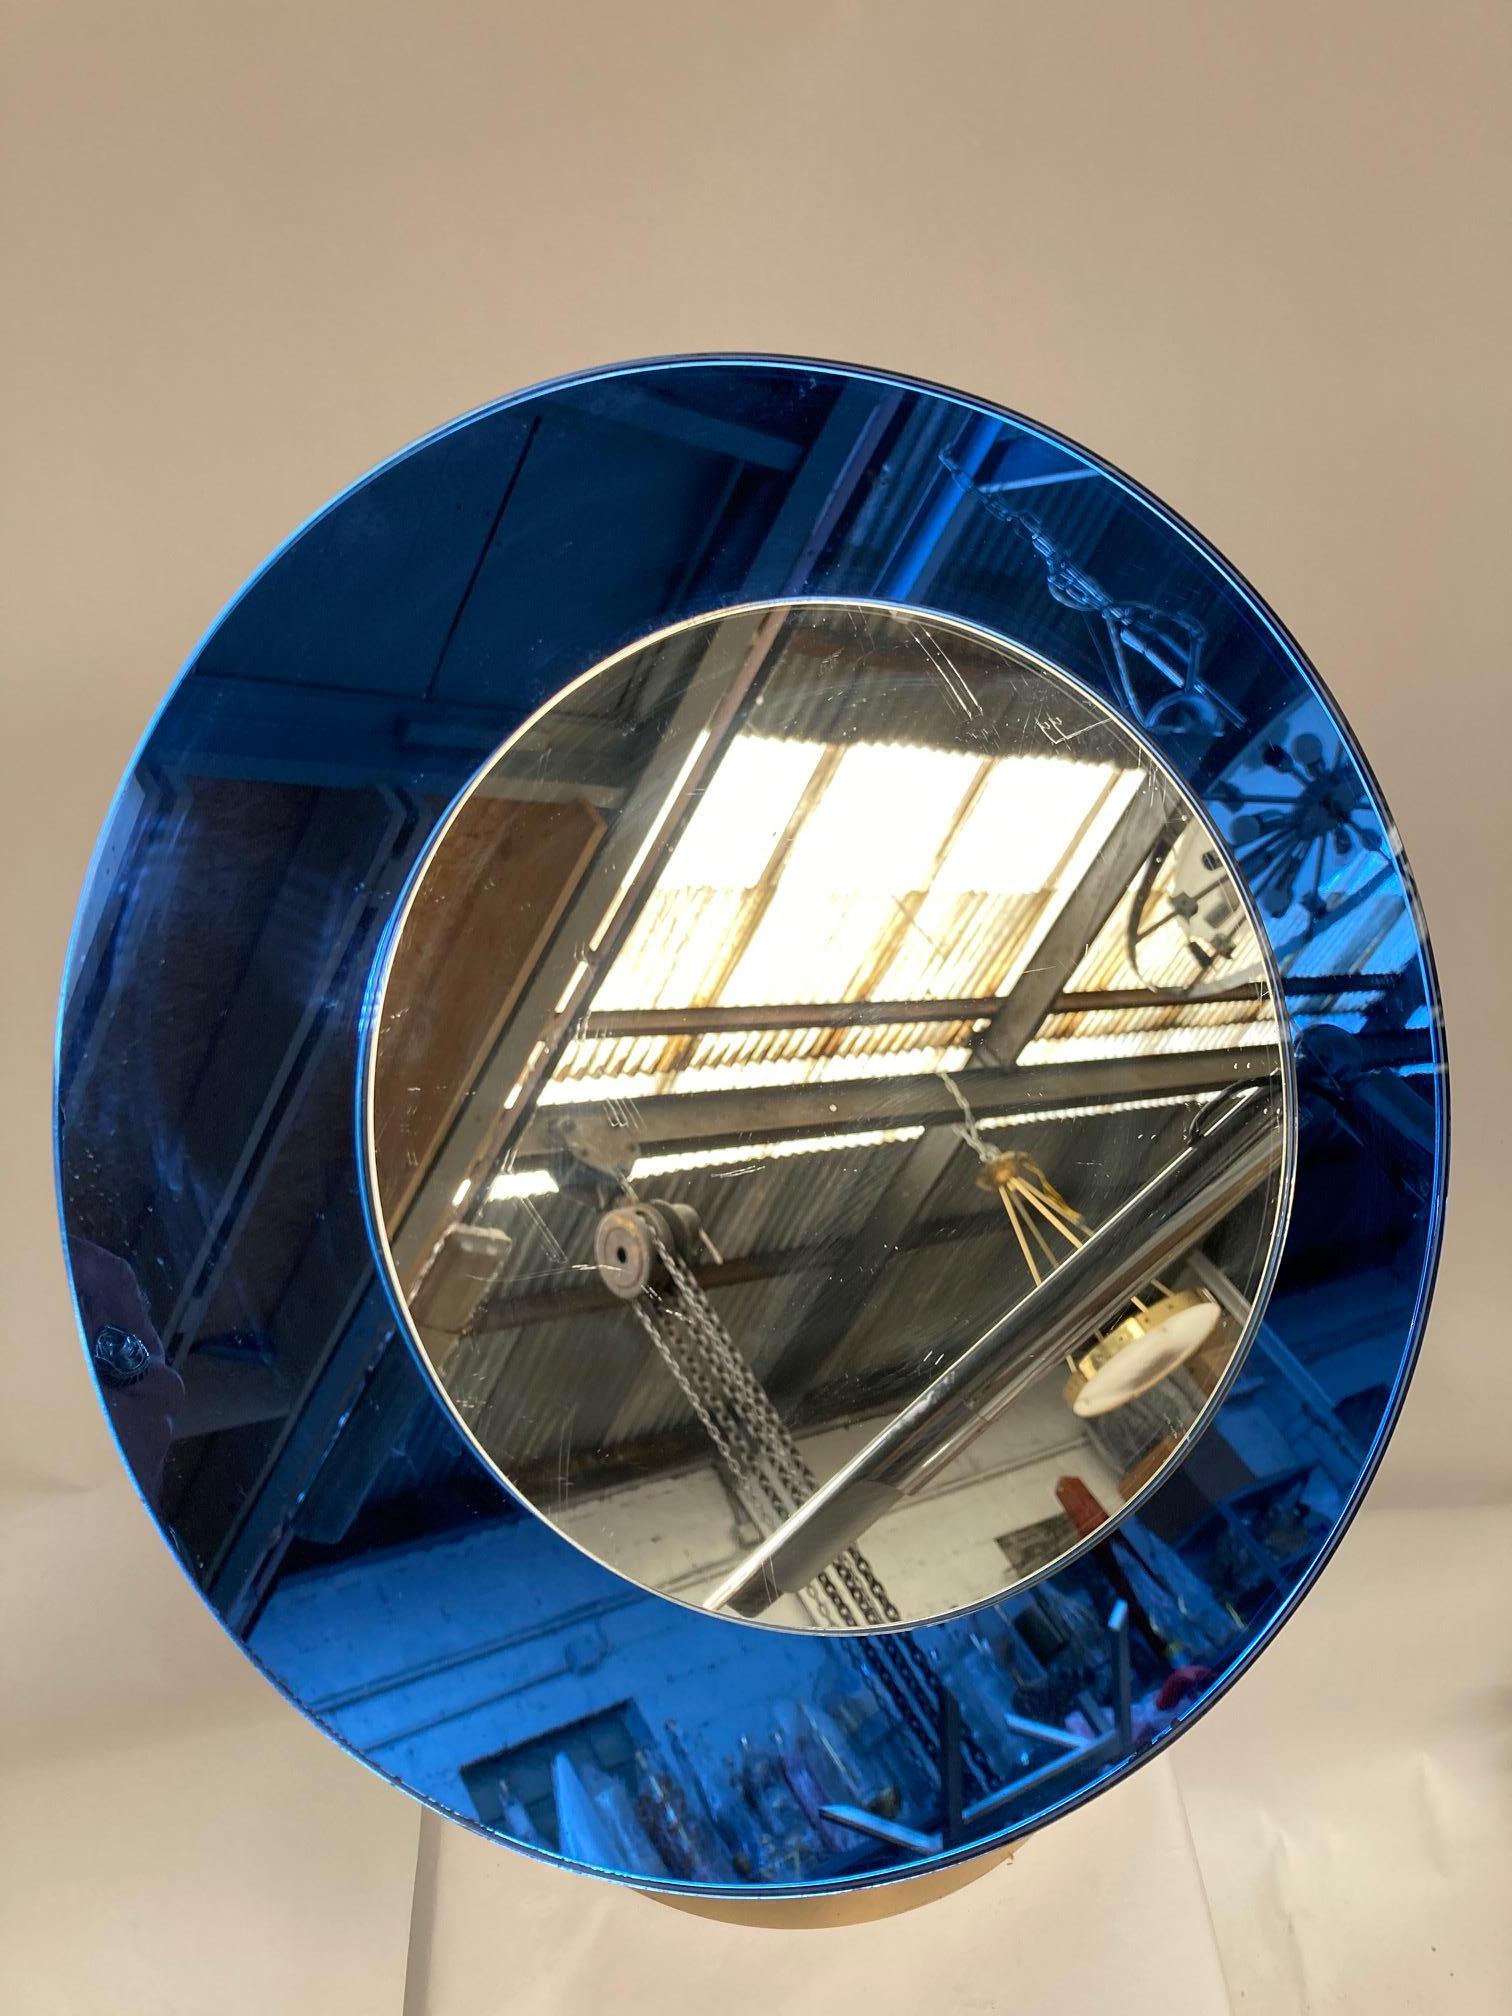 Tischspiegel aus den 1950er Jahren von Fontana Arte
Blaues Glas
Italien
